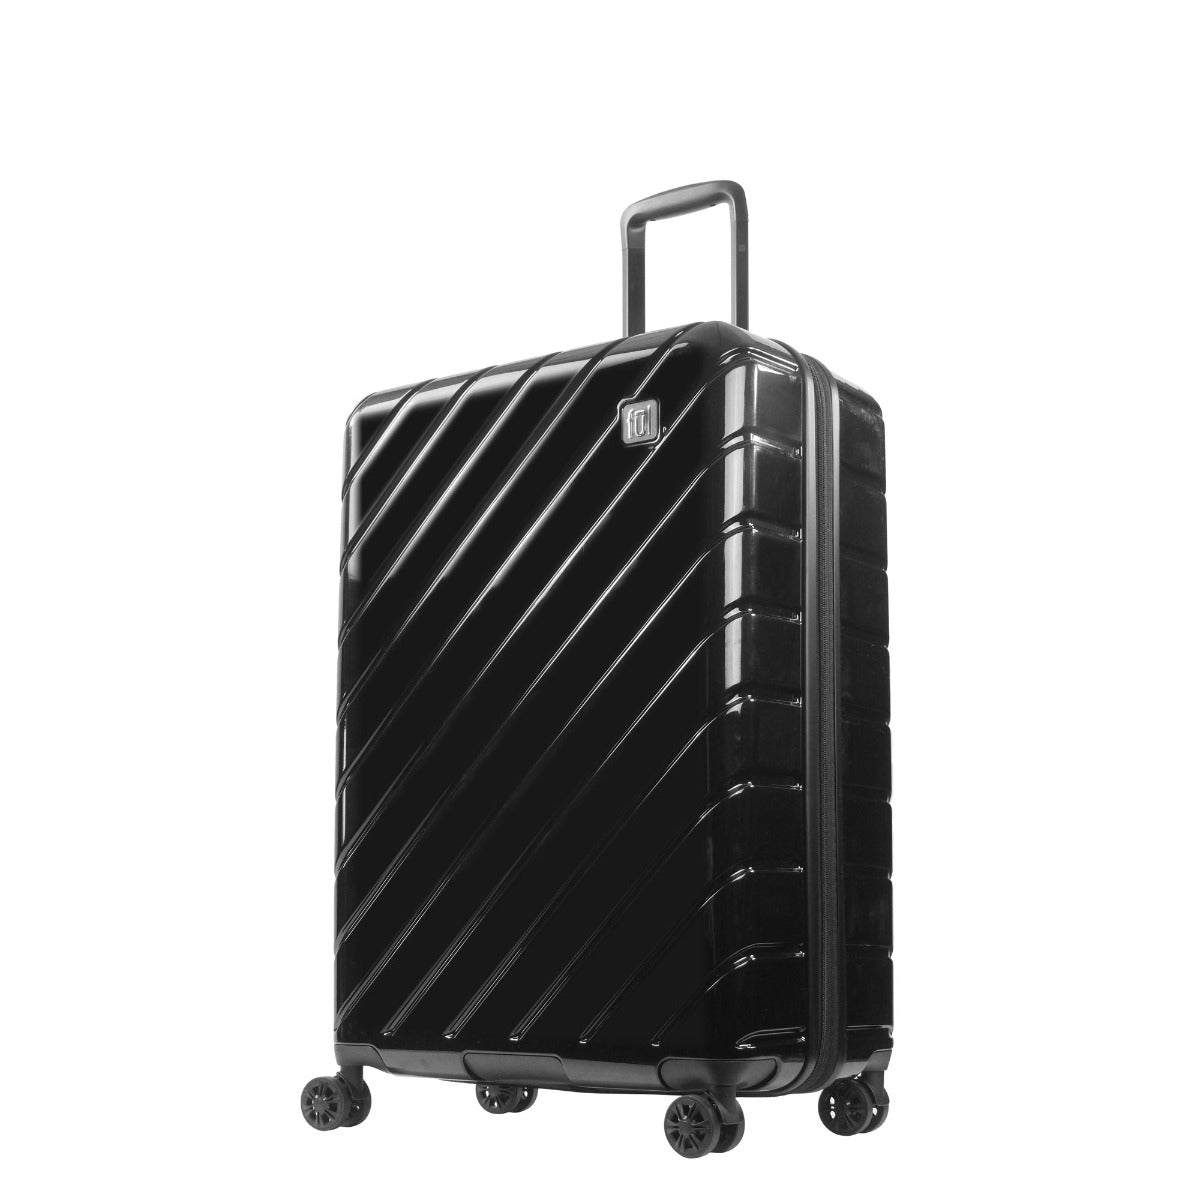 Ful Velocity 31" Expandable Hardside Spinner Luggage, Black